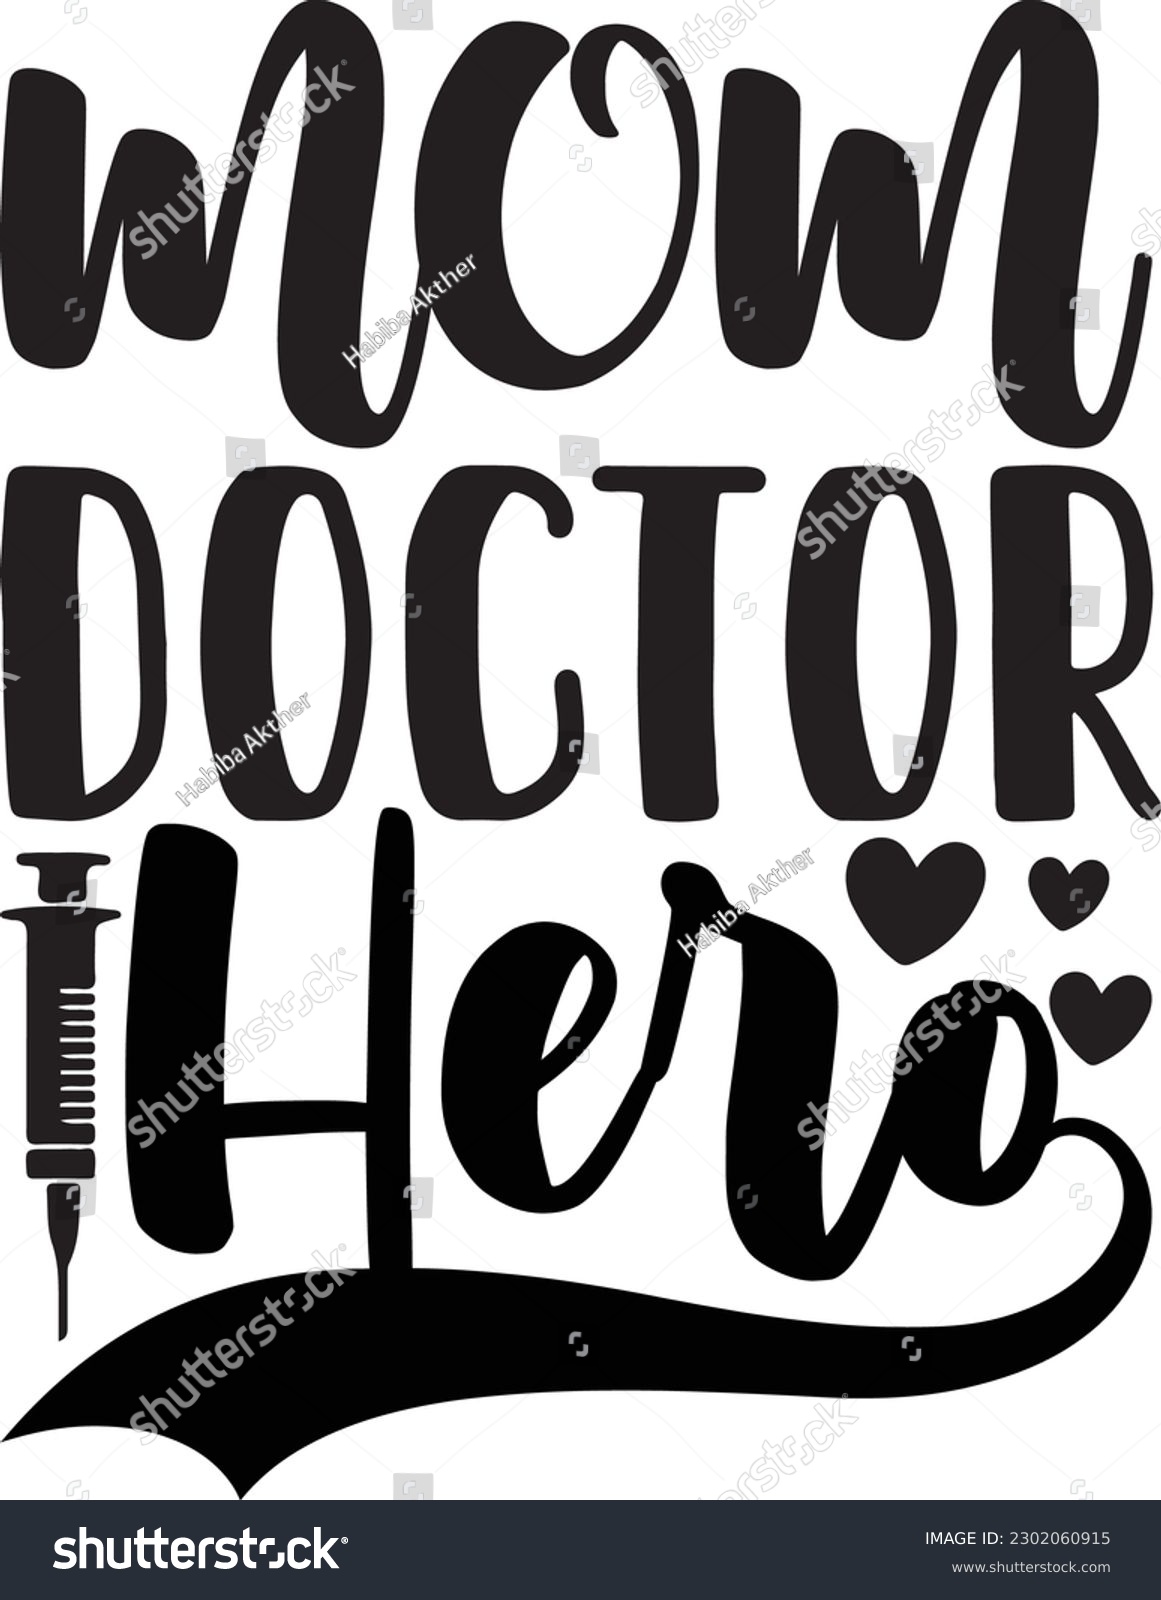 SVG of Mom Doctor Hero,Doctor's Day,#1 doctor,Doctor Svg,silhouette,Vector,Nurse SVG,Essential Worker,Hospital,Heart Stethoscope SVG,dentist svg,monogram svg,medical,Eps,uniform svg,Doctor Jacket svg, svg